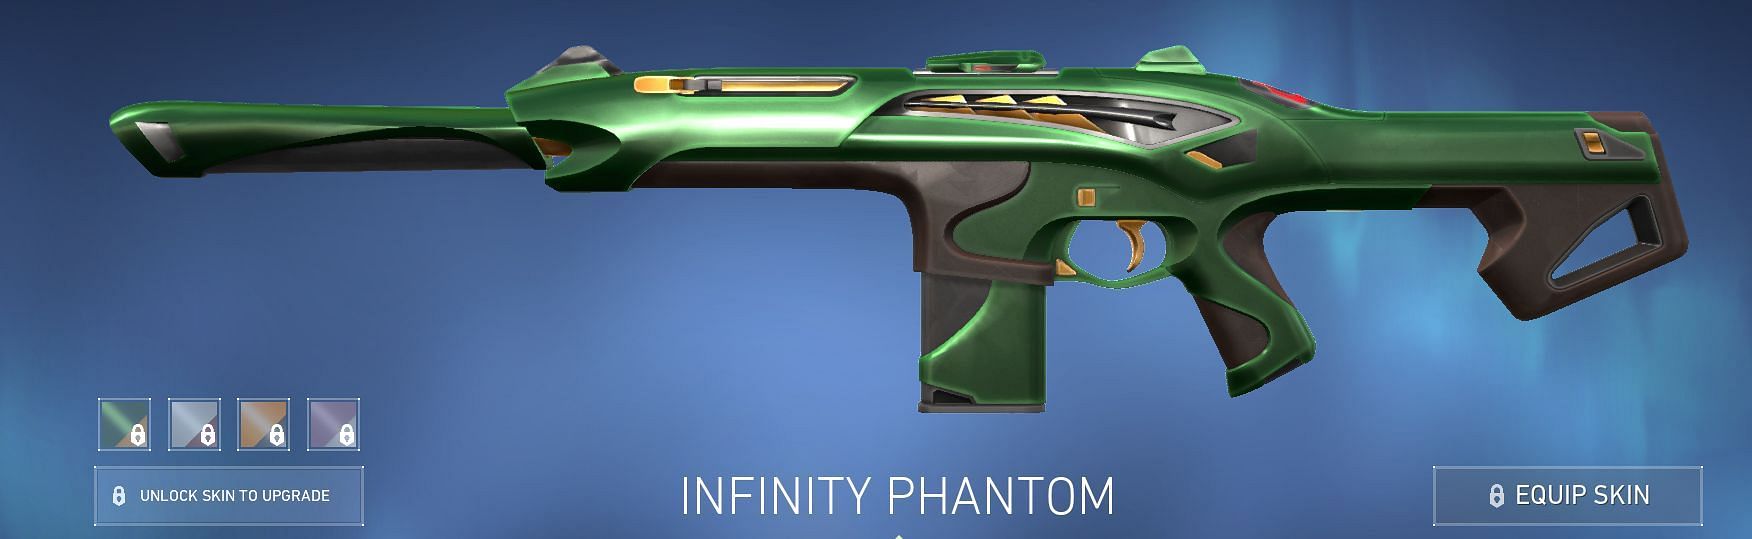 Infinity Phantom (Image via Riot Games)